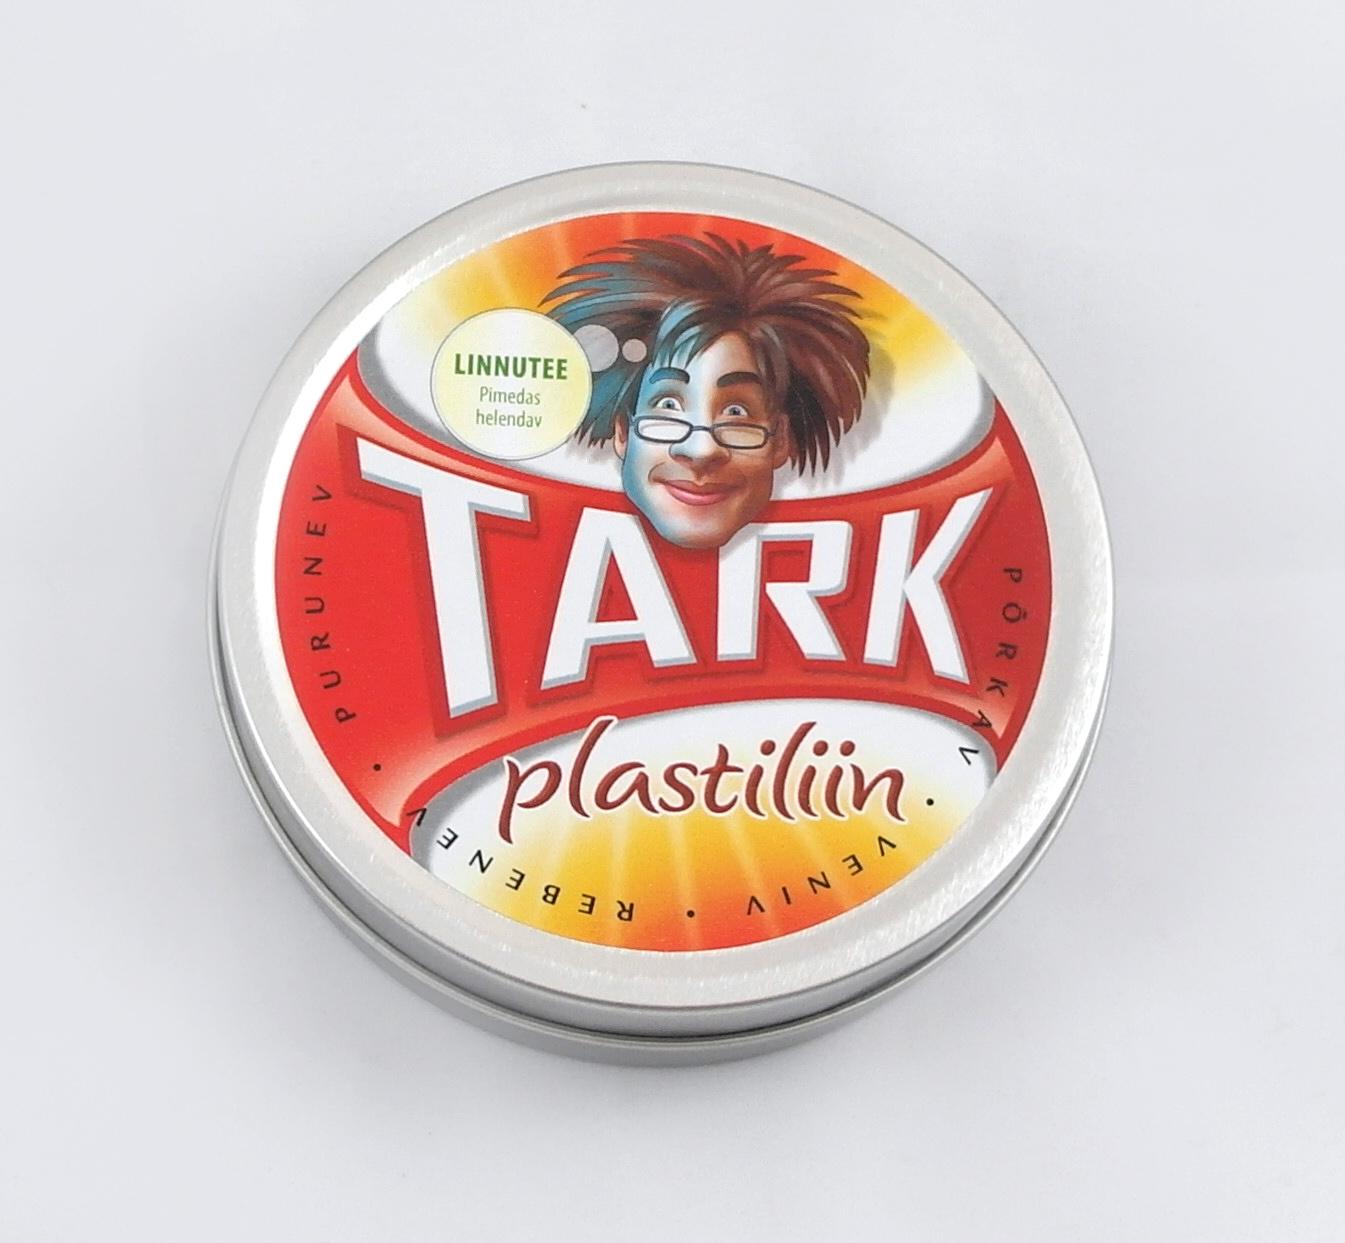 TARK PLASTILIIN - LINNUTEE (PI